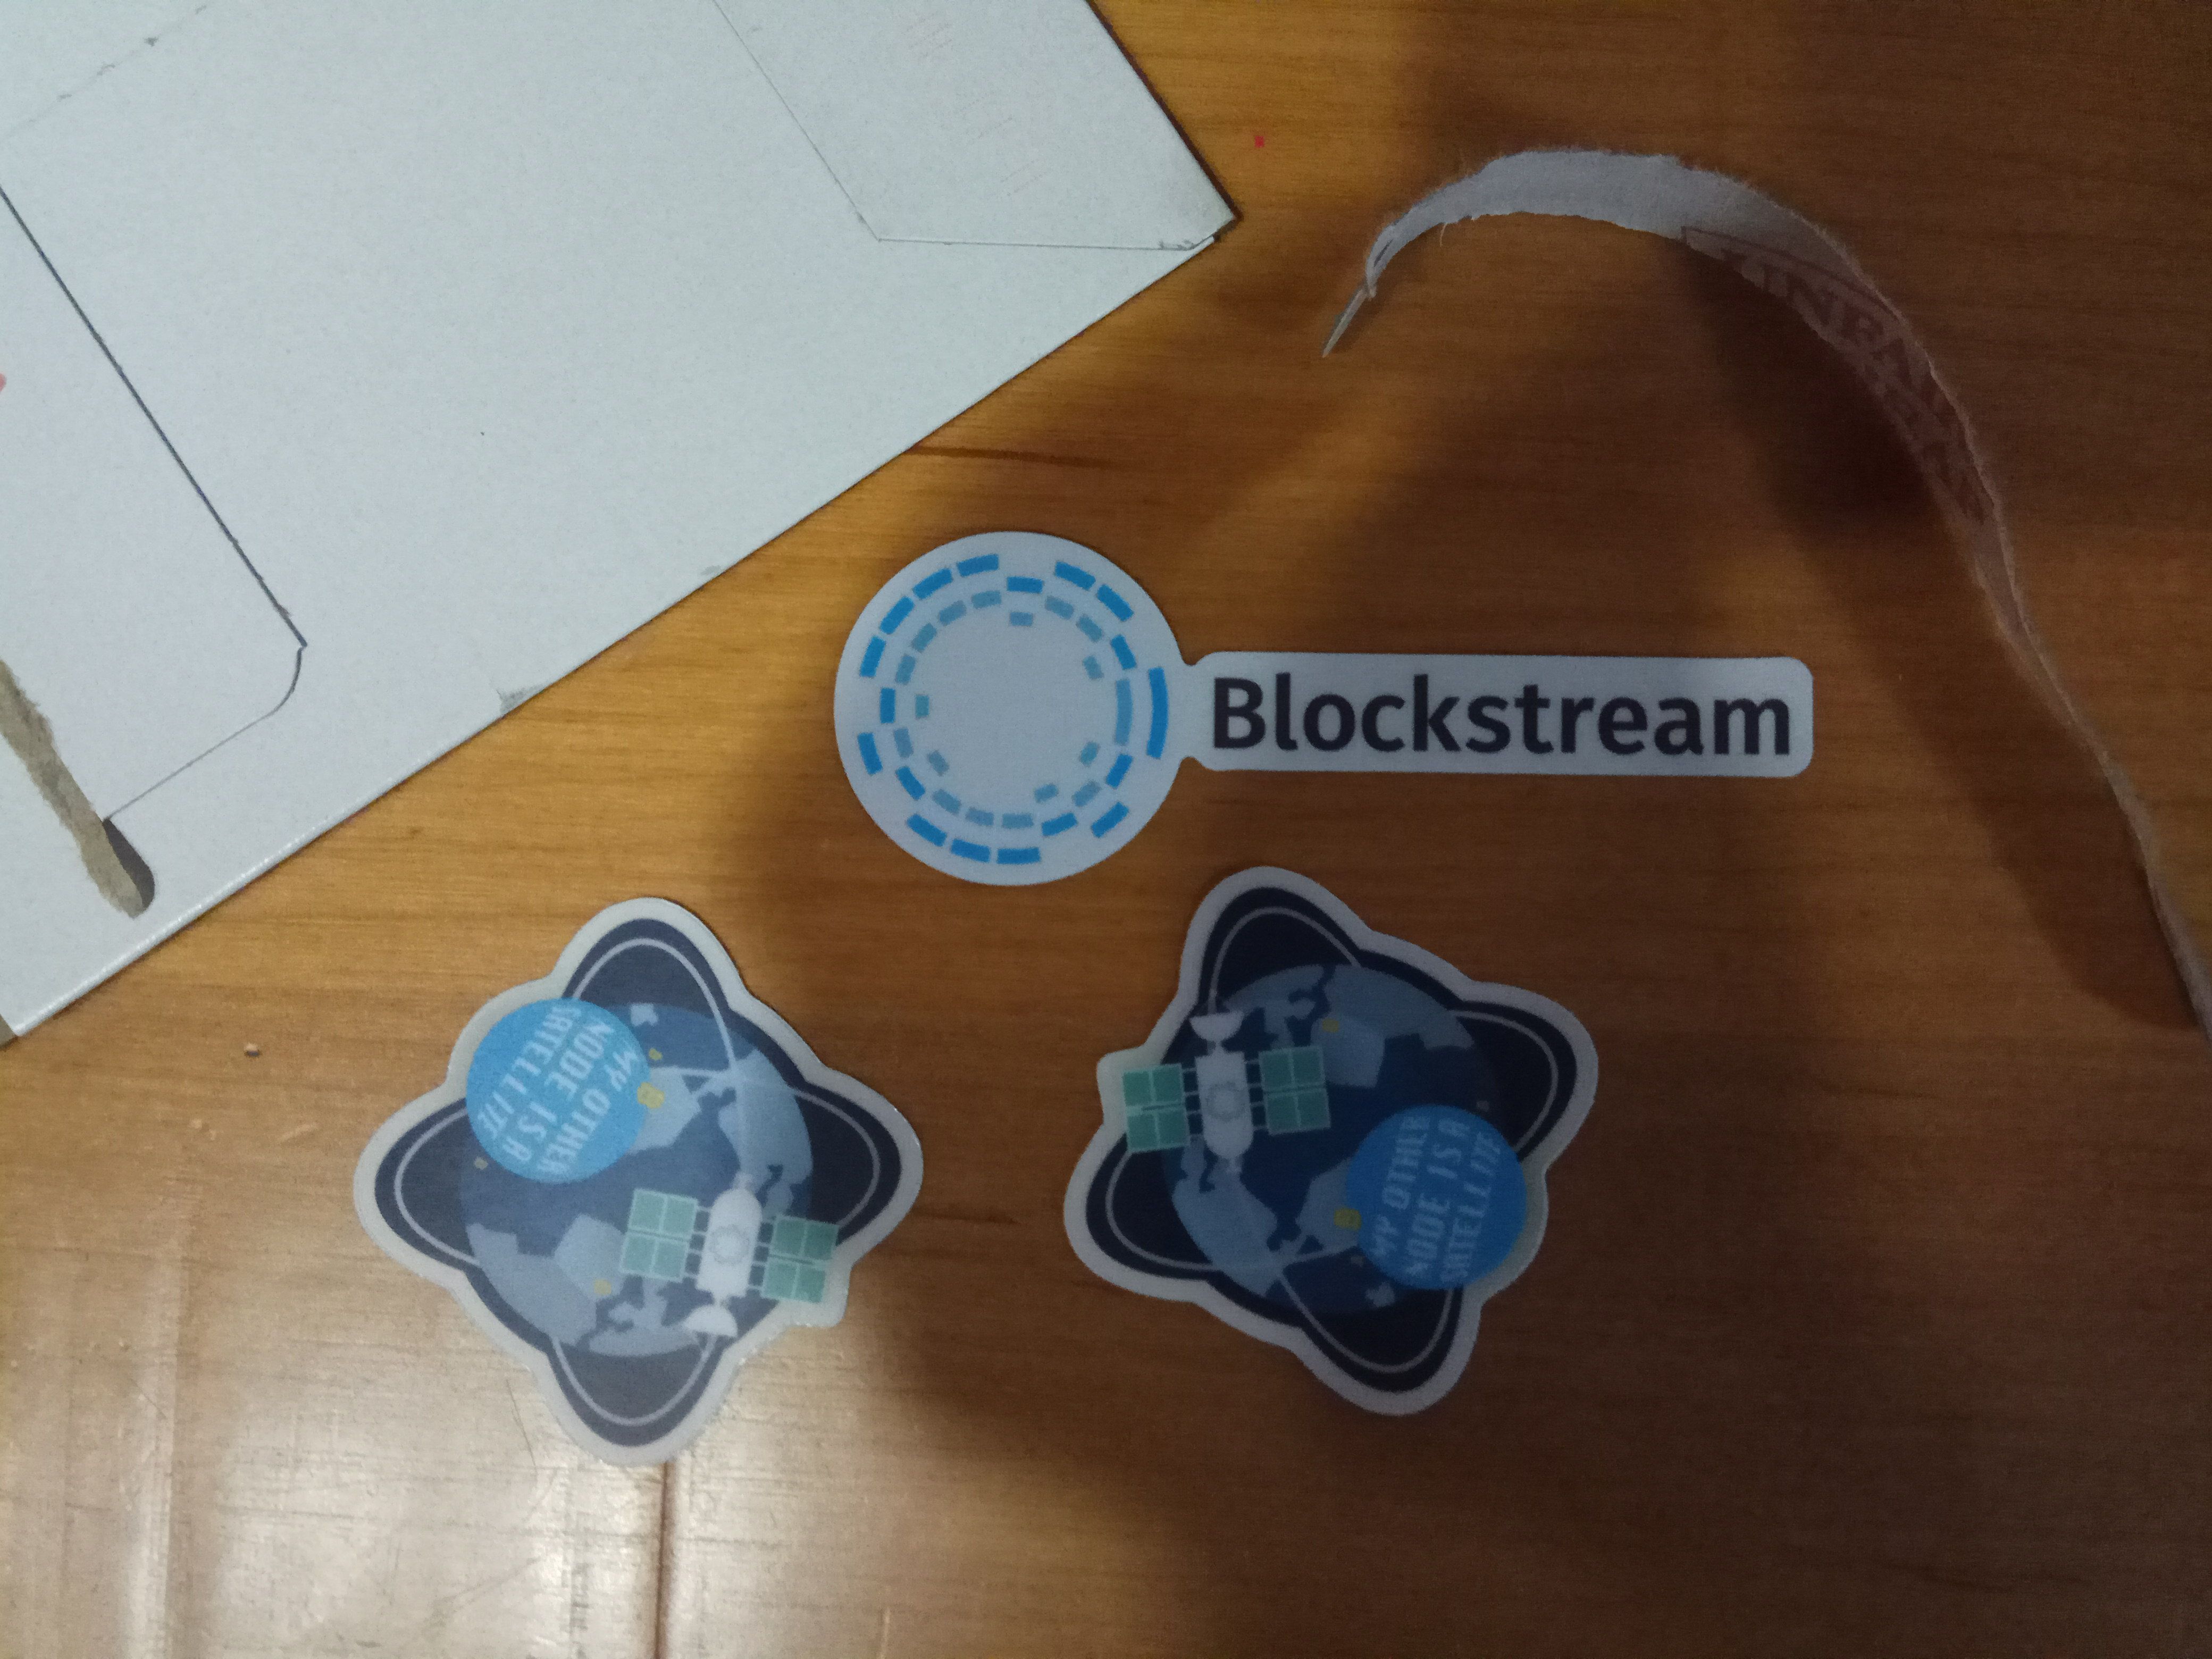 Blockstreamstickers.jpg